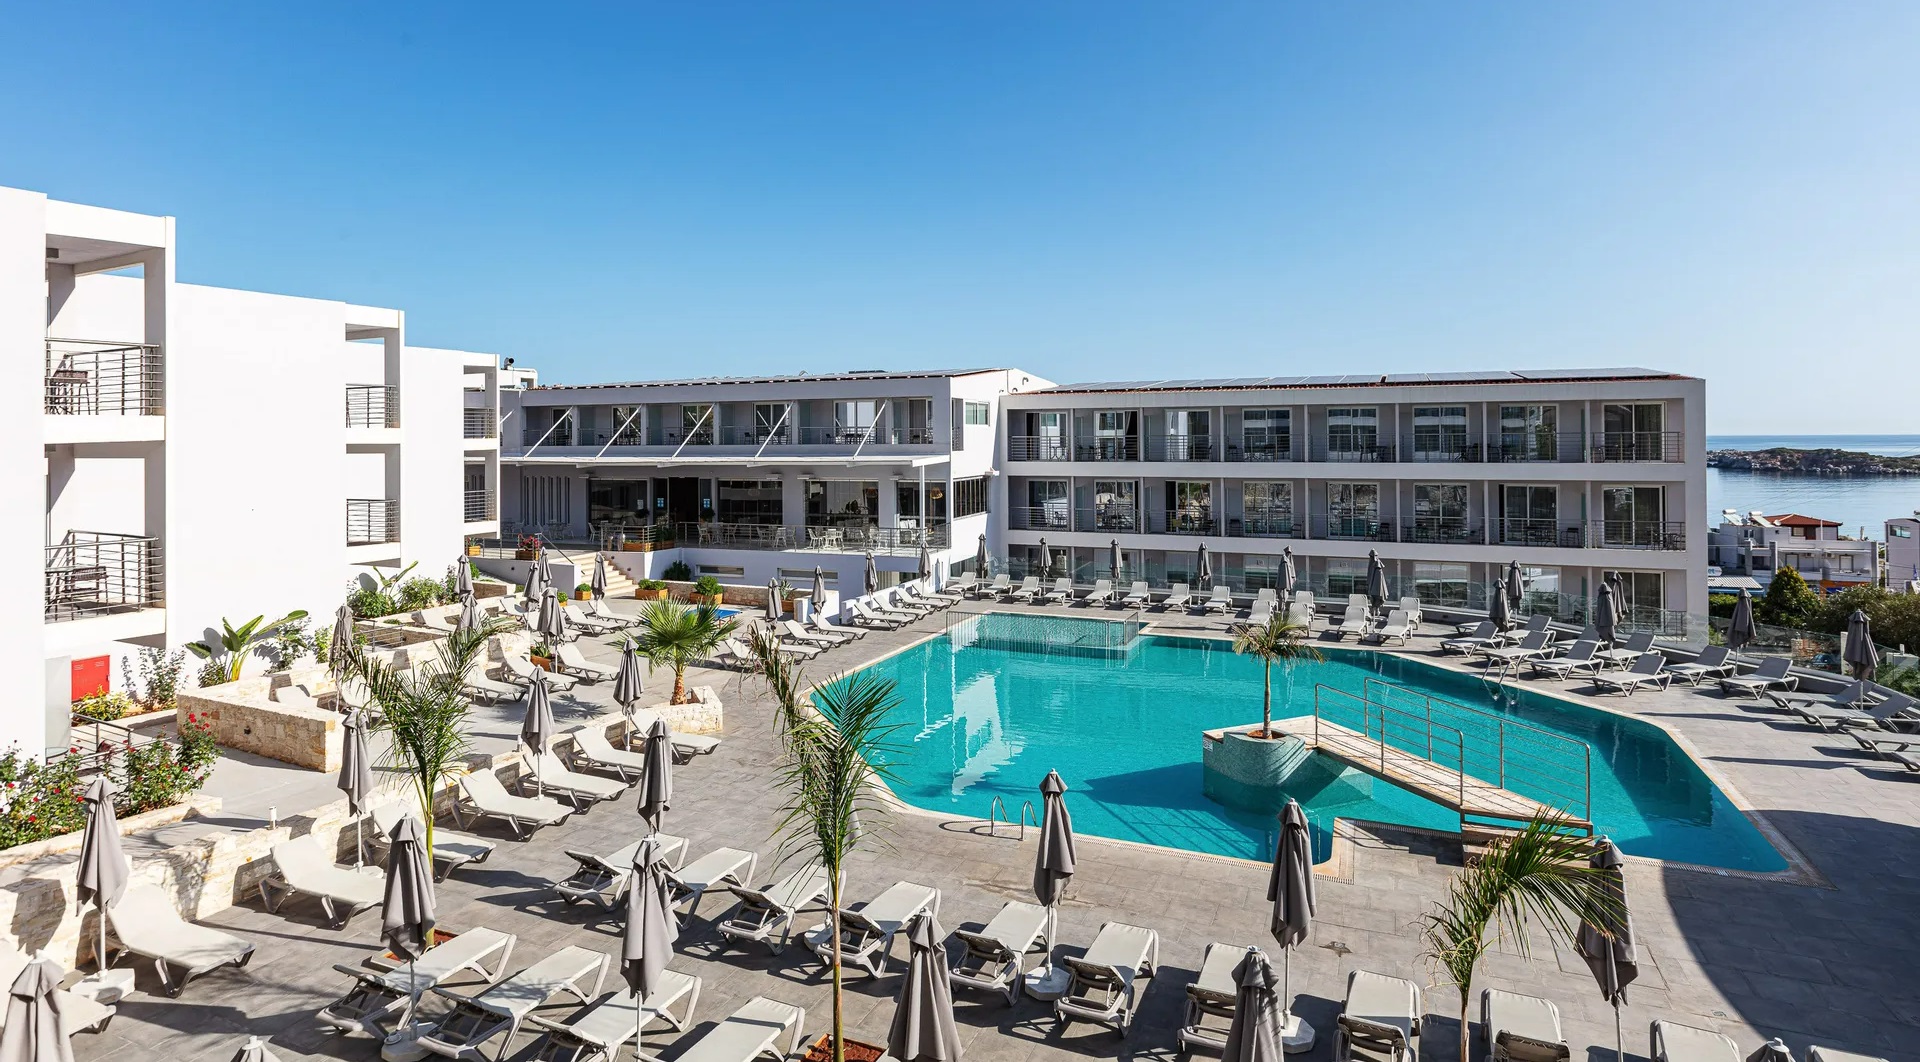 4* Atali Grand Resort - Μπαλί, Κρήτη ✦ 2 Ημέρες (1